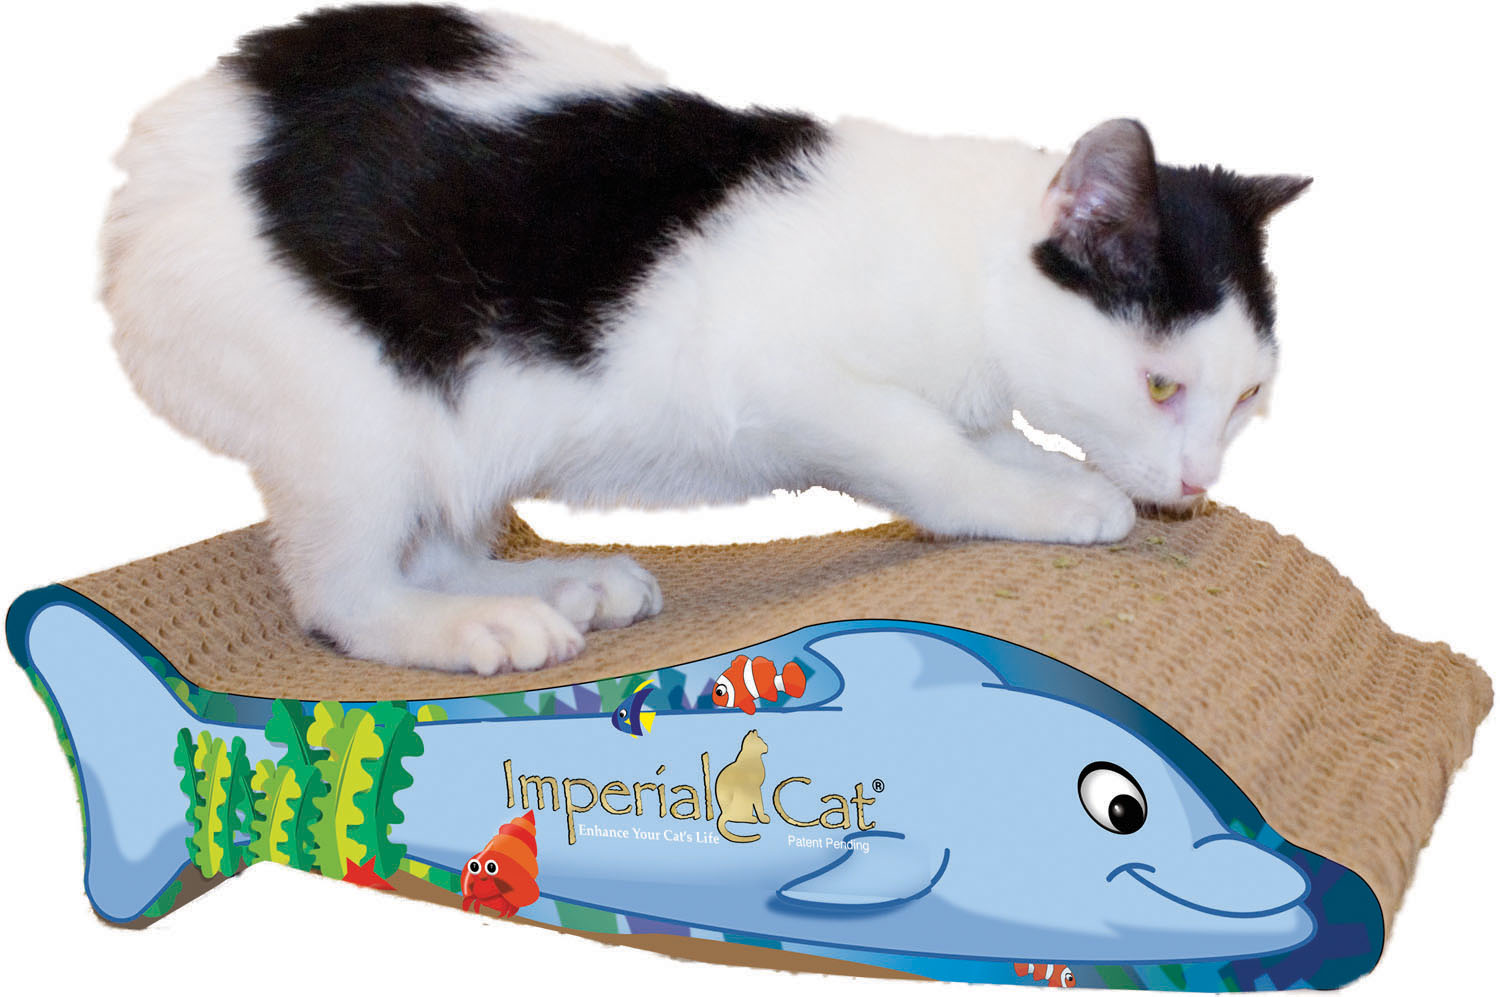 Imperial Cat flip